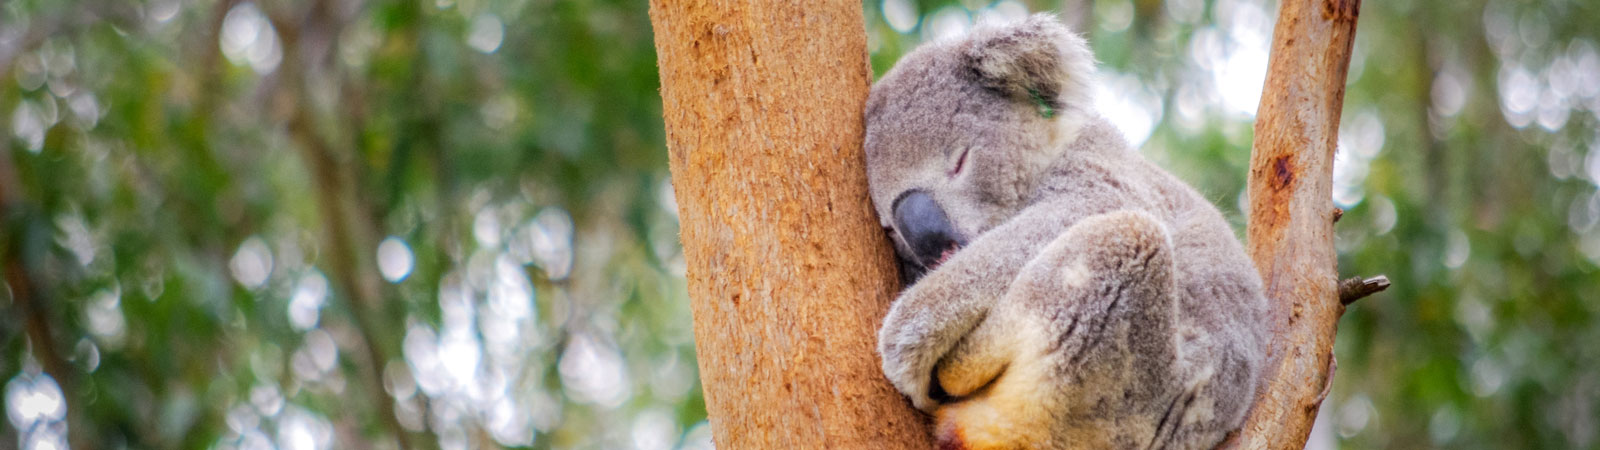 sleeping koala in tree